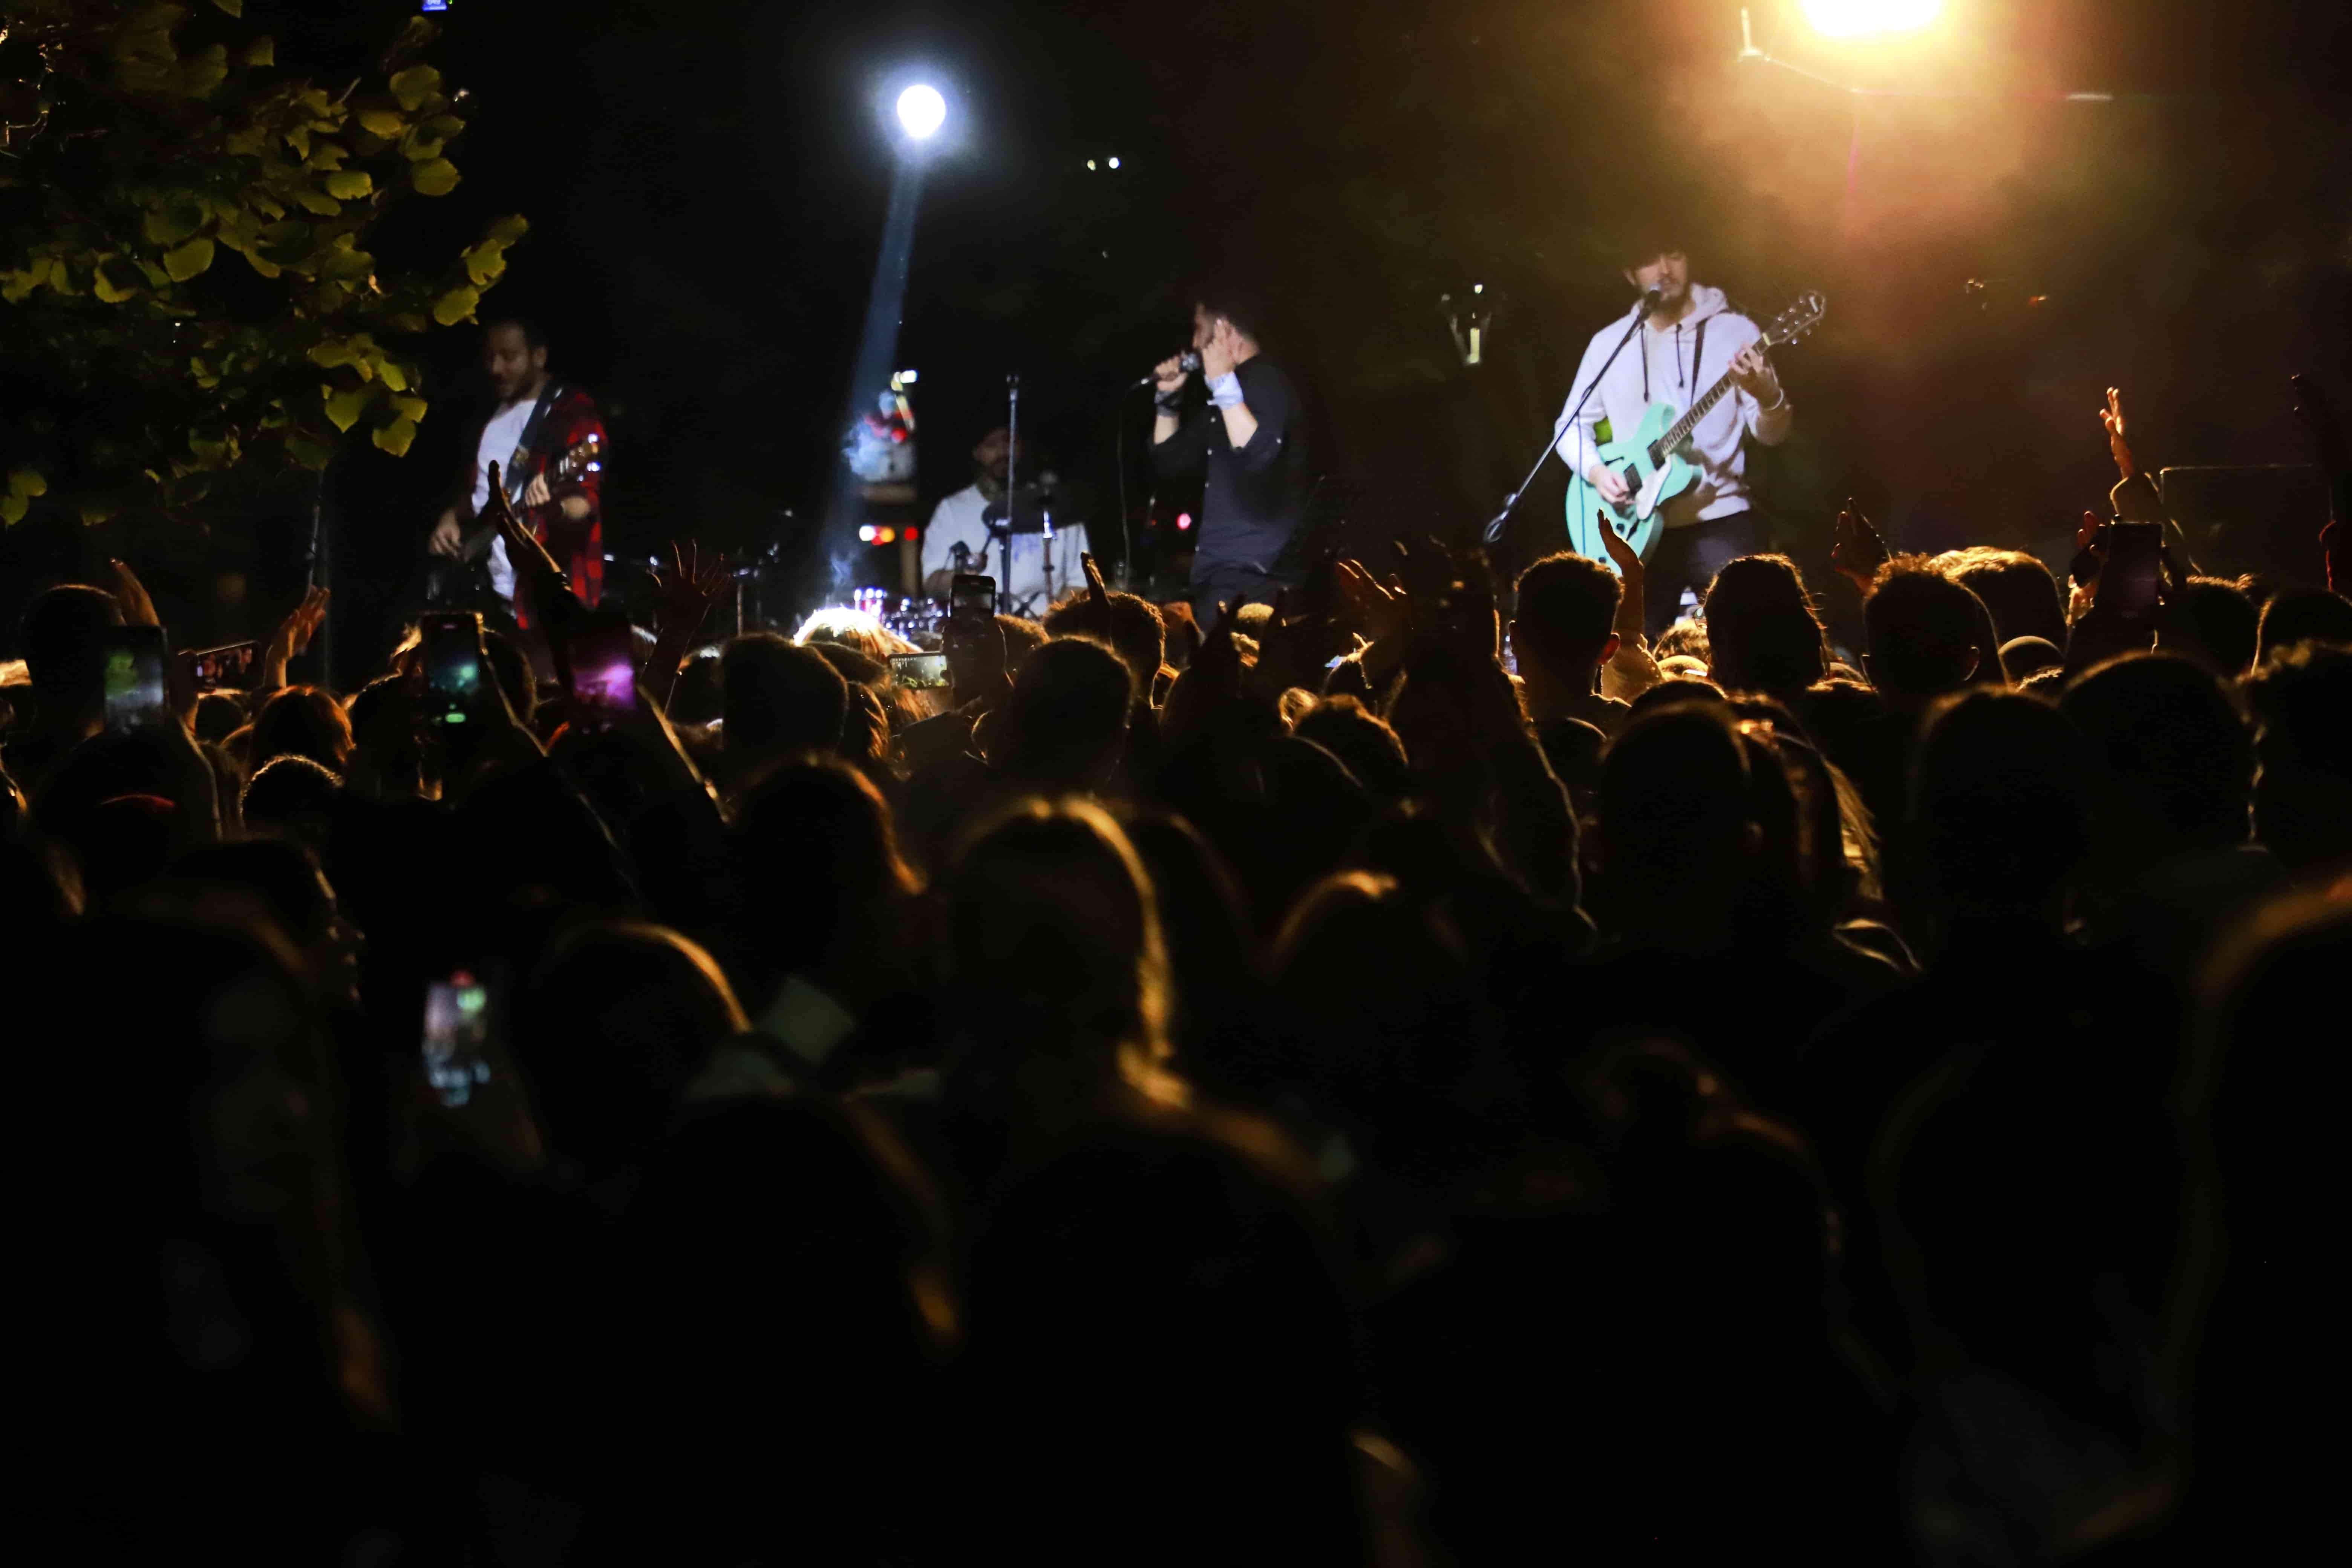 Etkinlikler kapsamında Kanlıkavak Parkı’nda düzenlenen “Yerel Gençlik Müzik Festivali” gençlerin yoğun katılımıyla gerçekleştirildi. 